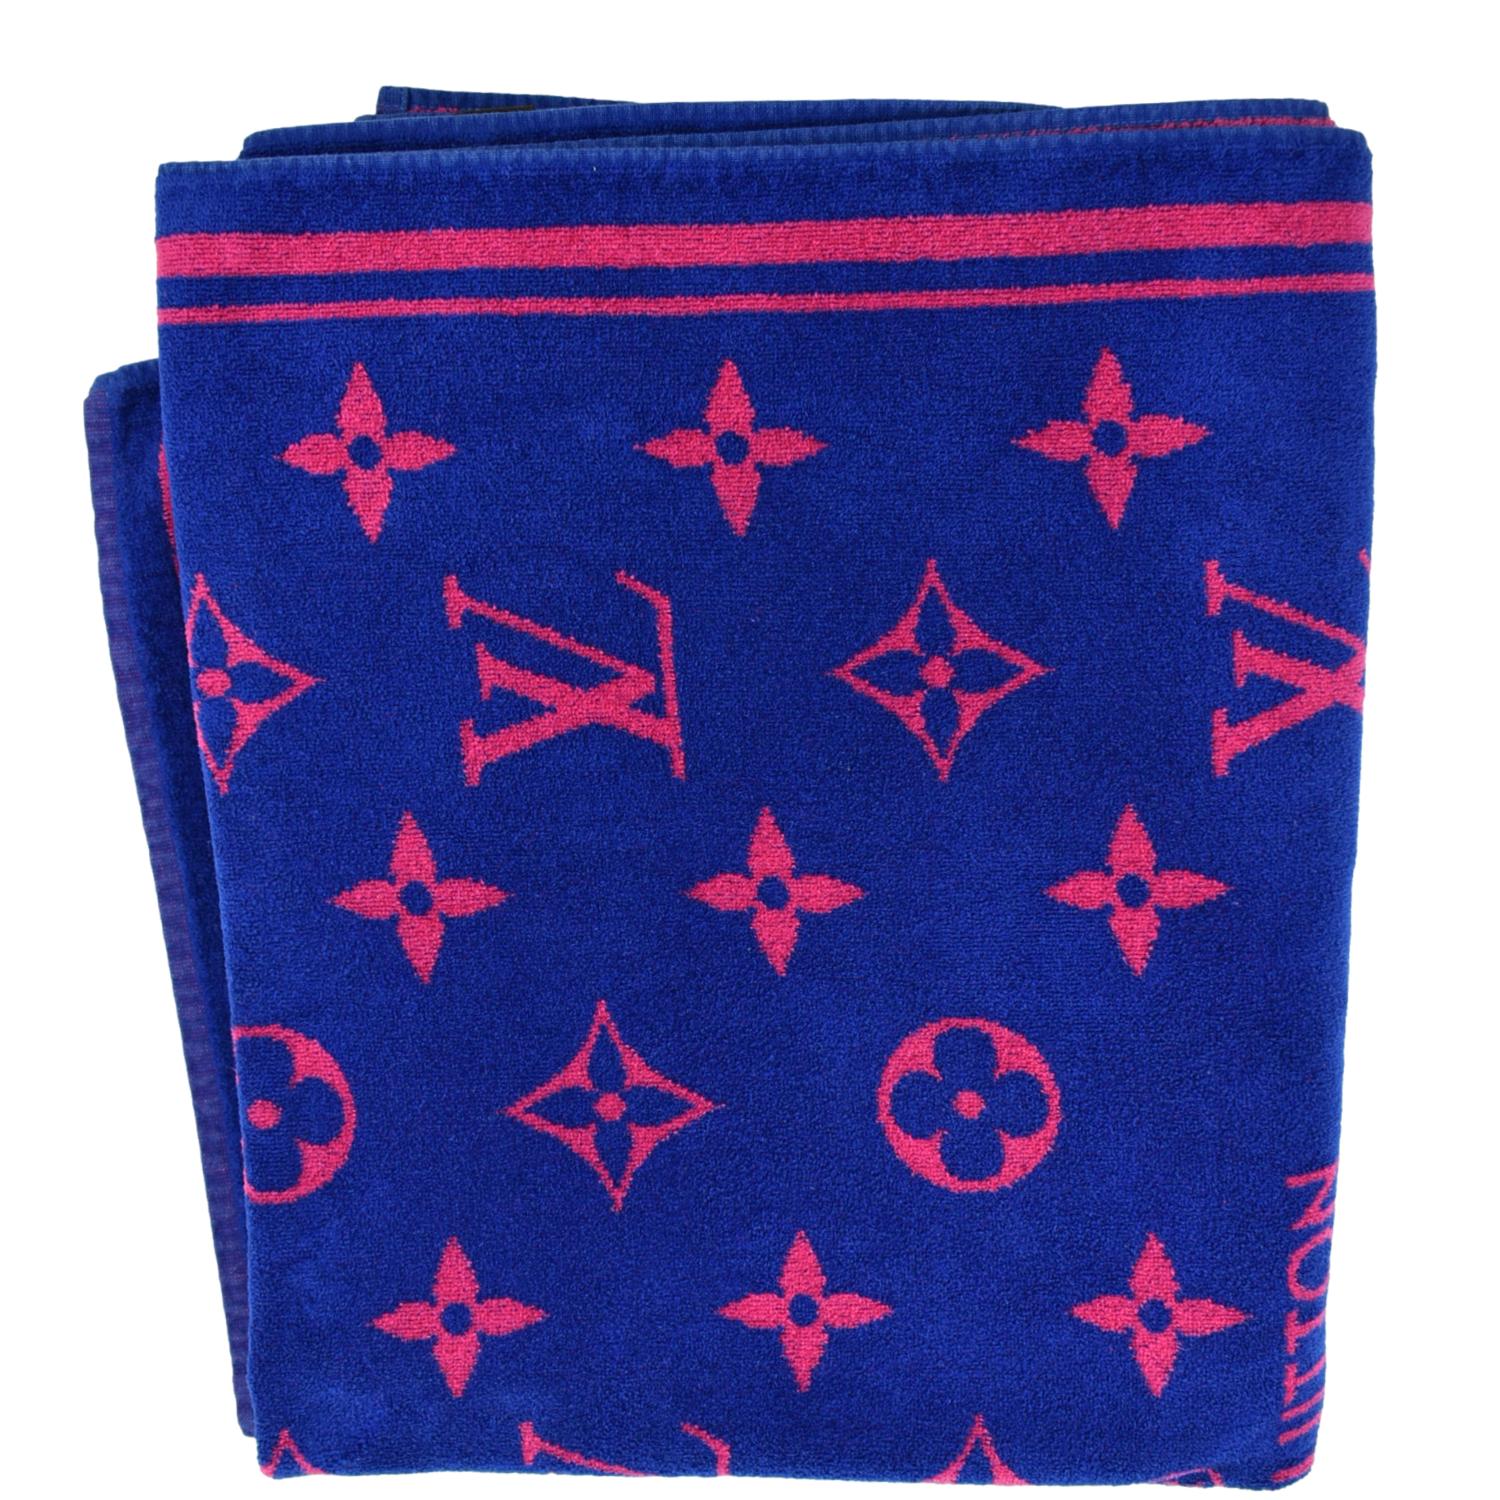 Louis Vuitton Beach Towel Logo Beach Towel 